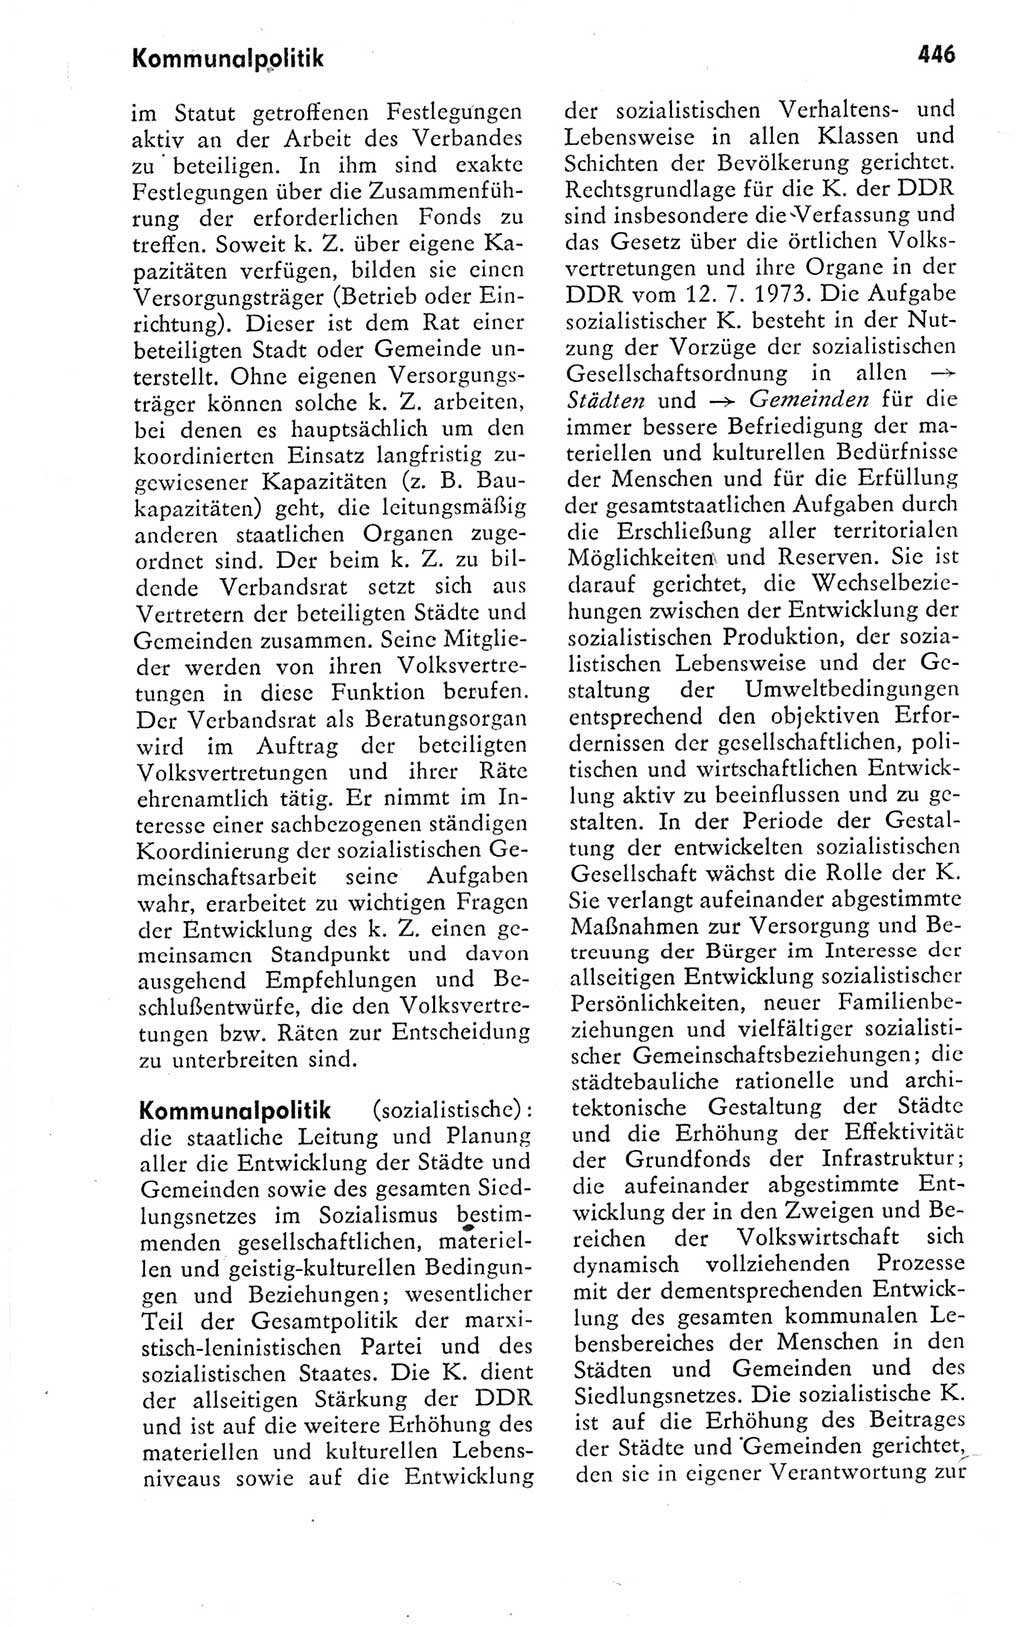 Kleines politisches Wörterbuch [Deutsche Demokratische Republik (DDR)] 1978, Seite 446 (Kl. pol. Wb. DDR 1978, S. 446)